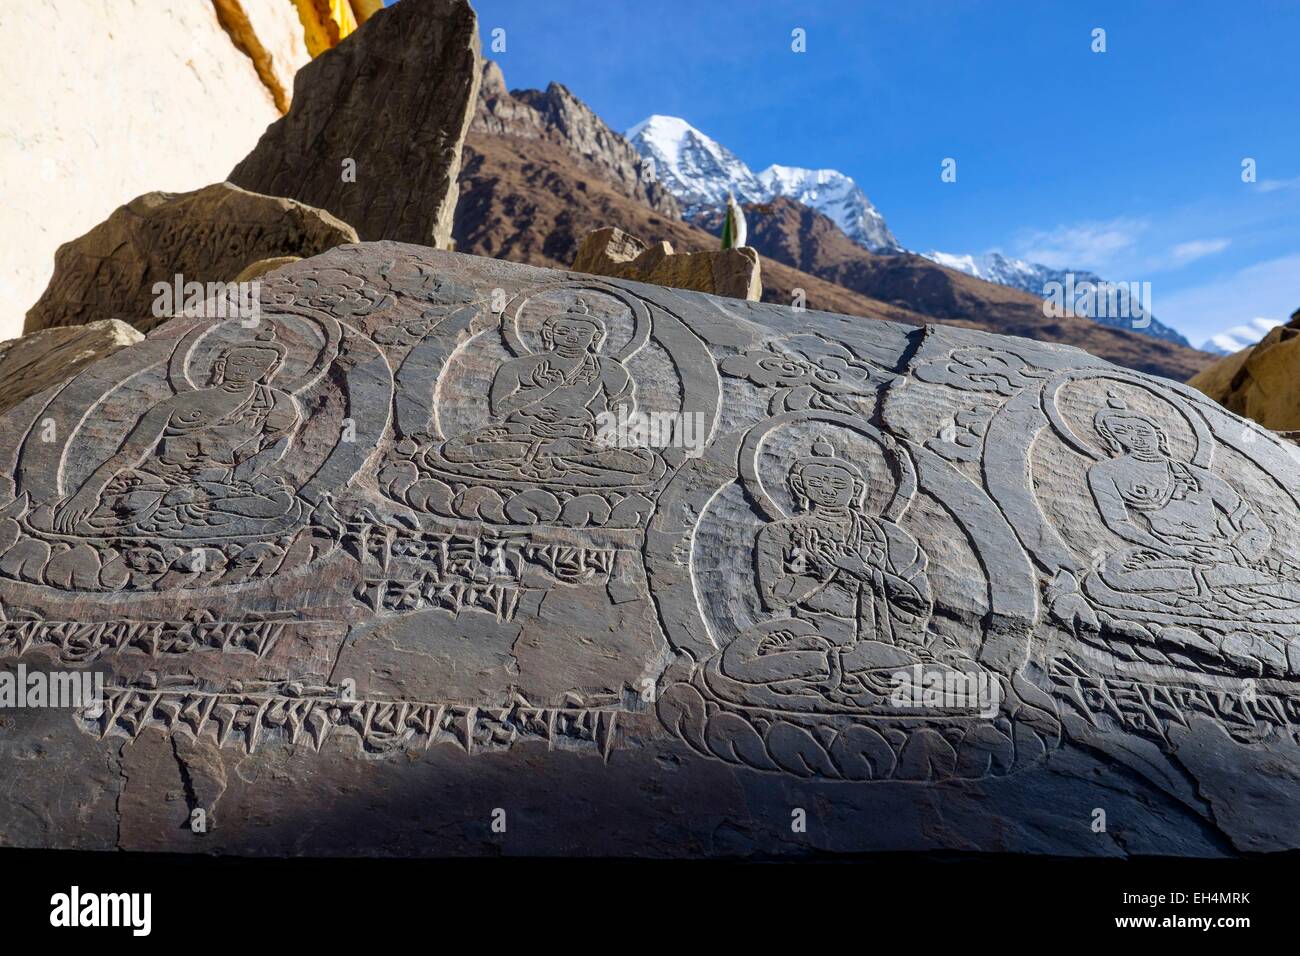 Le Népal, Gandaki zone, Manaslu Circuit, entre Lho et Samagaon, Samagaon (alt.3520m), des pierres gravées avec des formules sacrées bouddhistes ou pierres mani Banque D'Images